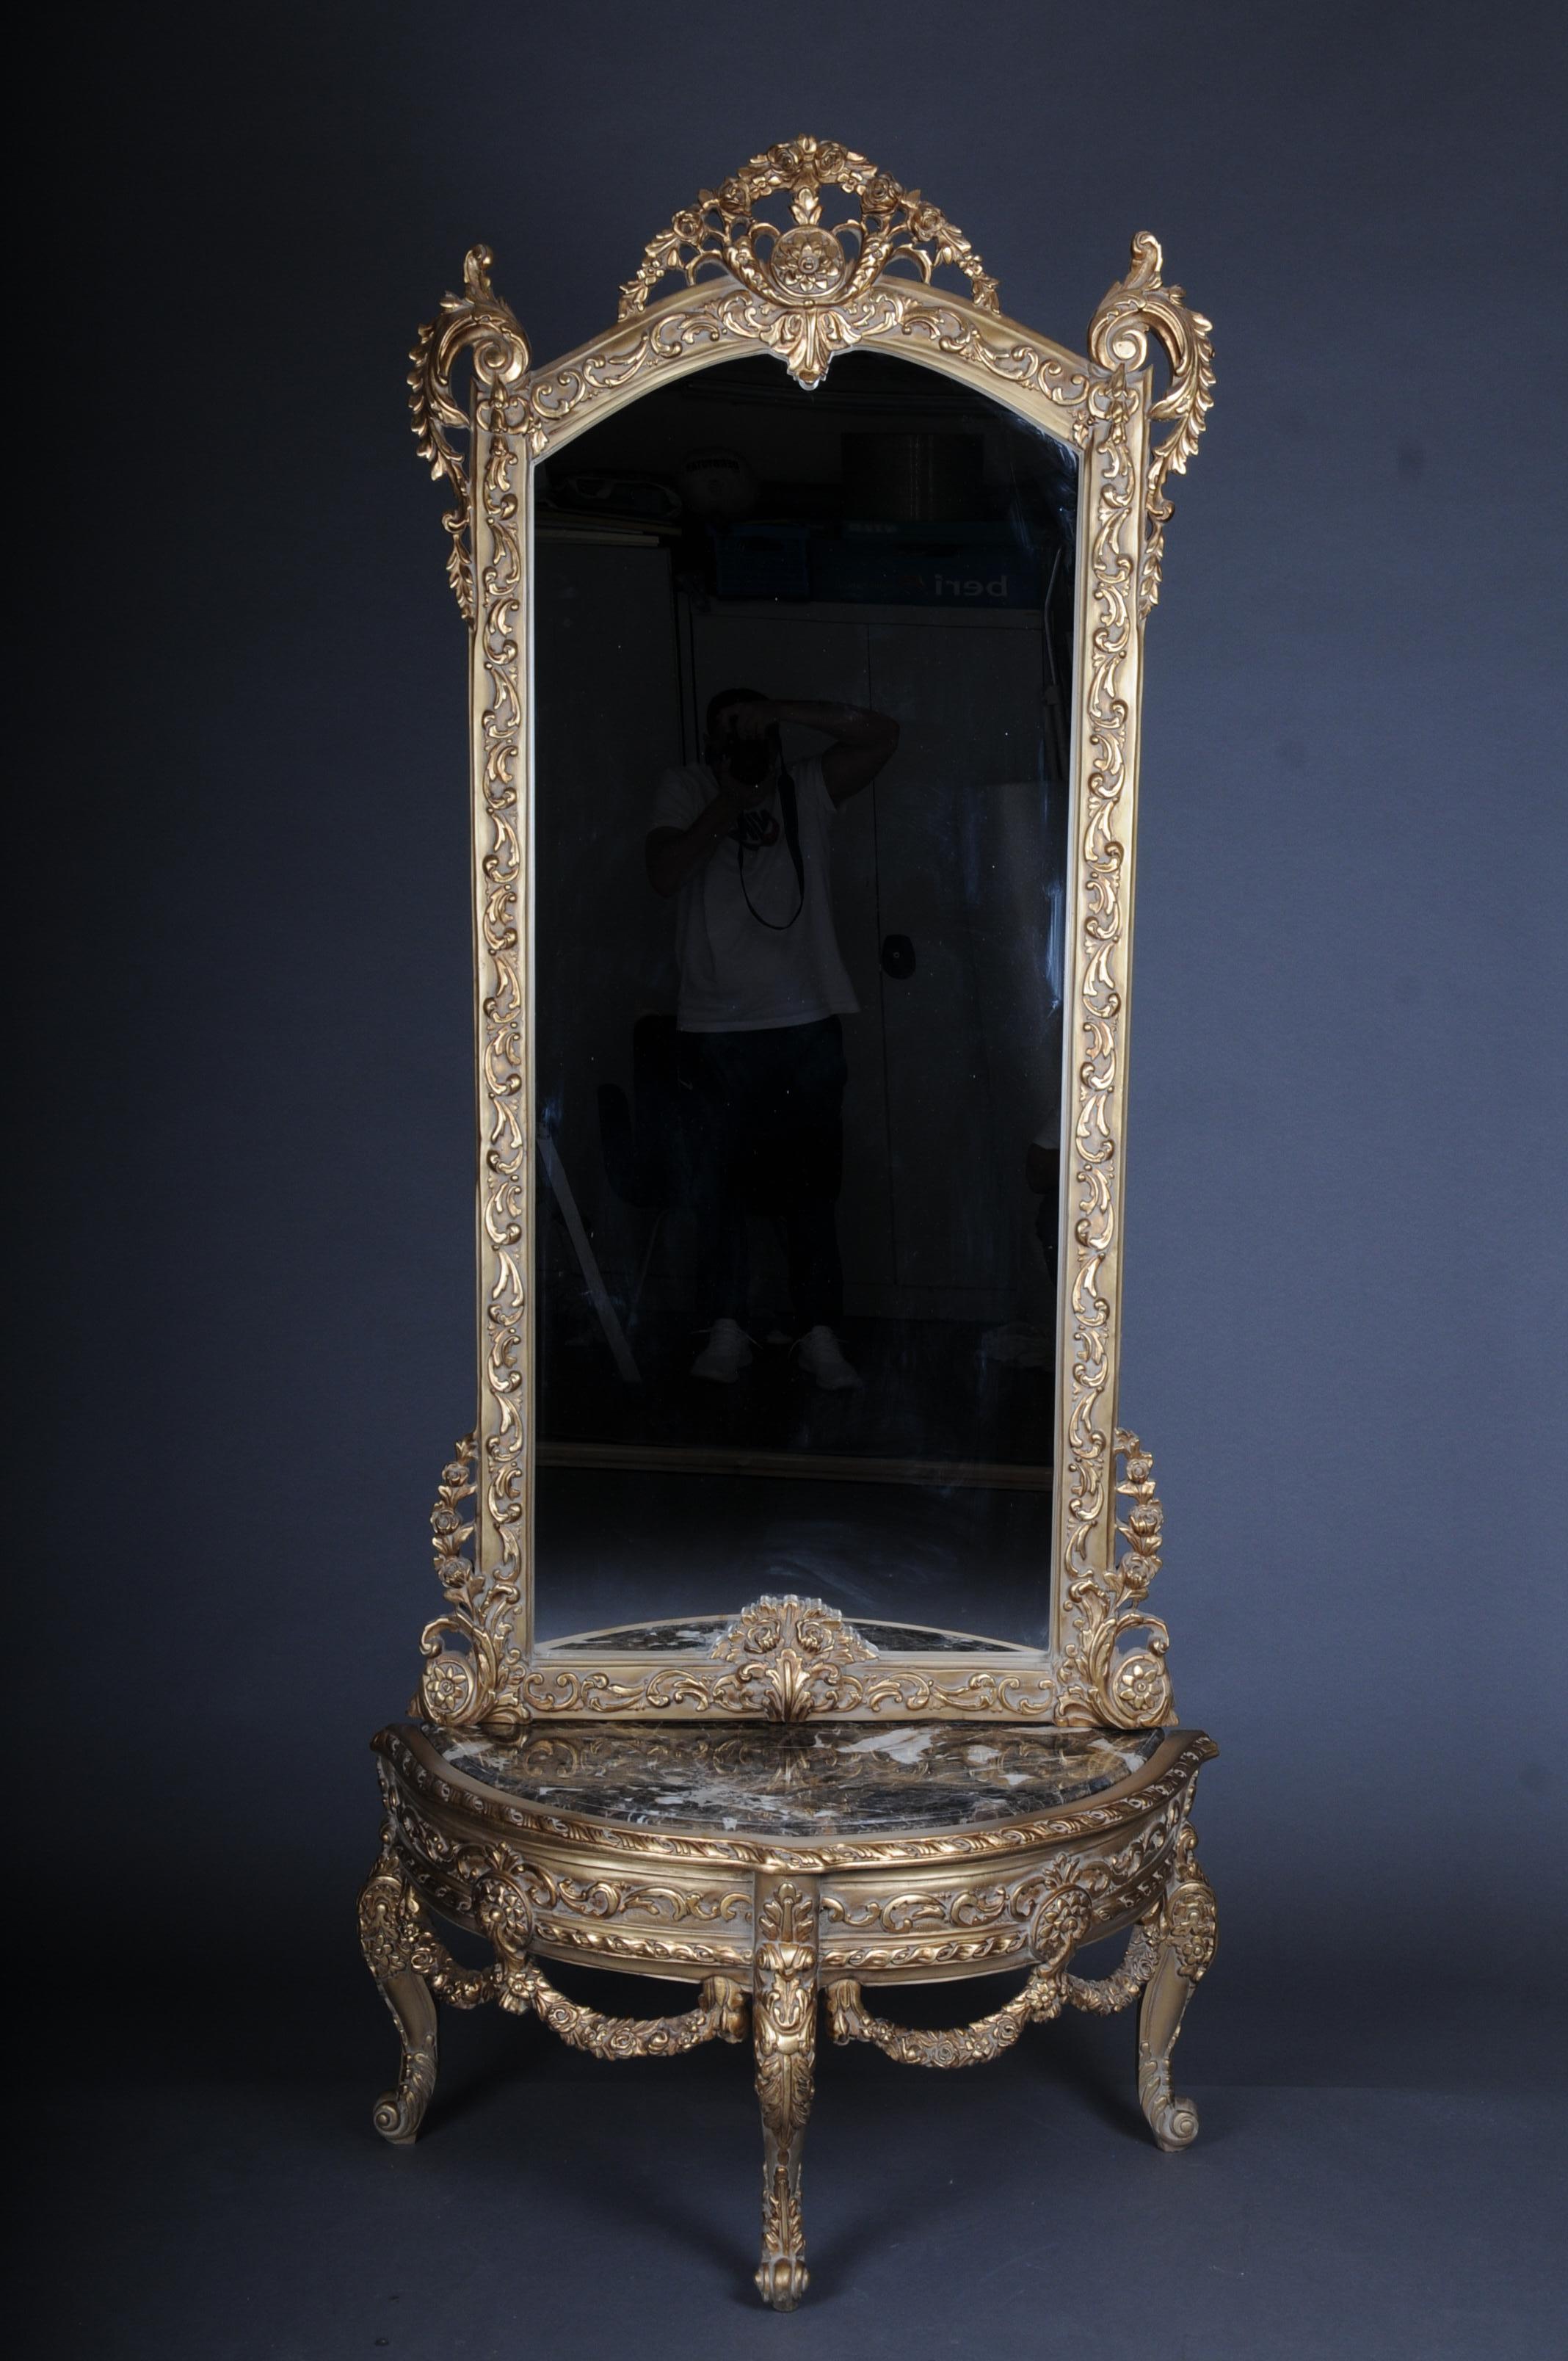 20. Jahrhundert schöner Konsolenspiegel/Fußbodenspiegel im Louis XV, vergoldet

Massives Buchenholz, geschnitzt und bemalt. Halbkreisförmiger, hochrechteckiger Körper auf konischen, geriffelten Beinen. Gewölbter Rahmen mit umlaufenden